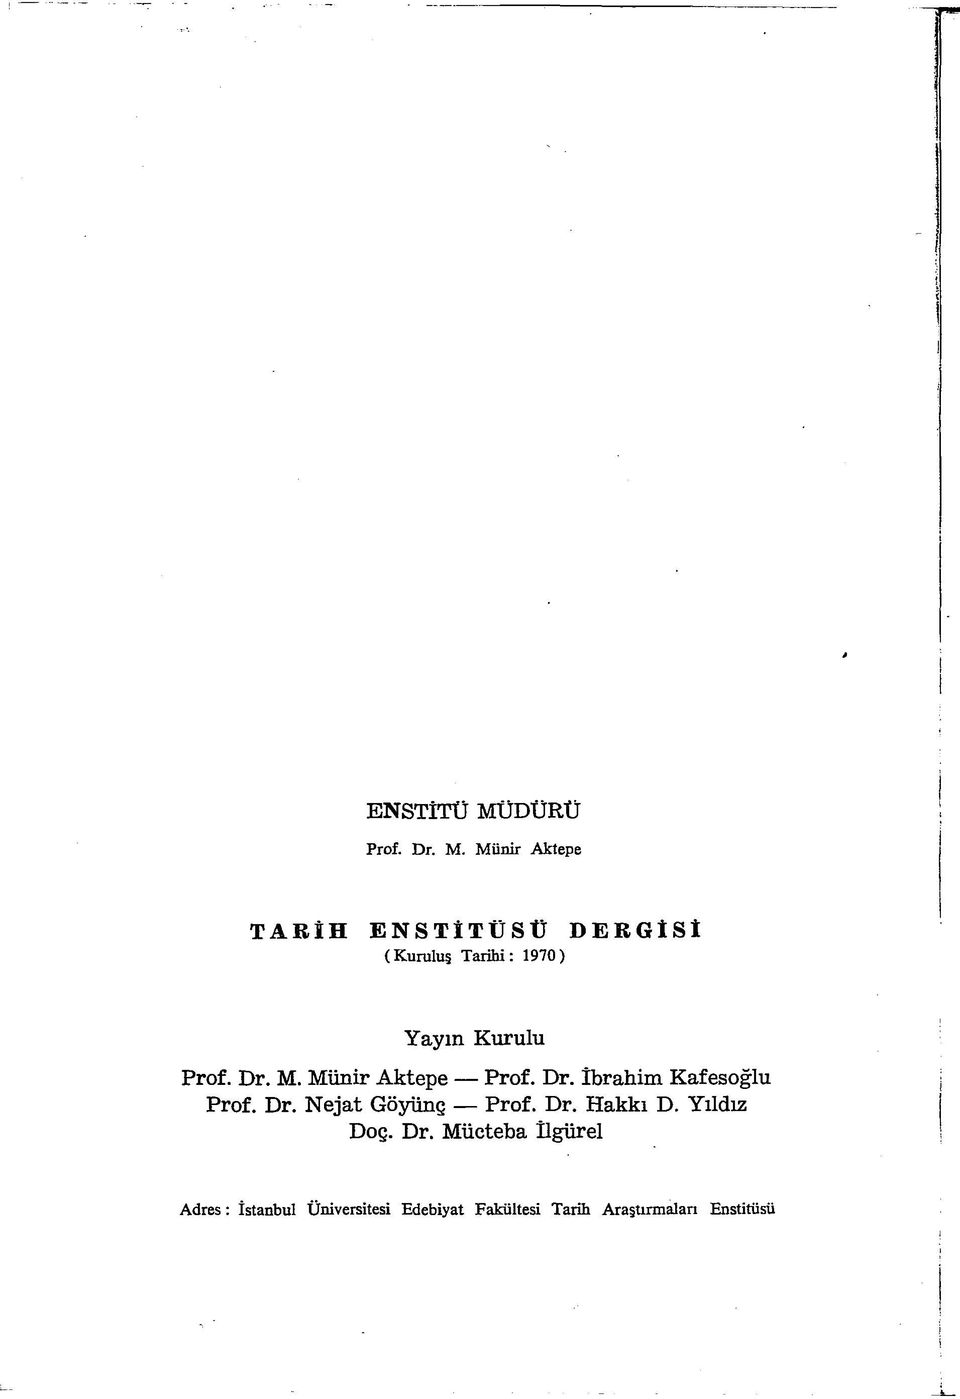 Münir Aktepe TARİH ENSTİTÜSÜ DERGİSİ (Kuruluş Tarihi: 1970) Yayın Kurulu